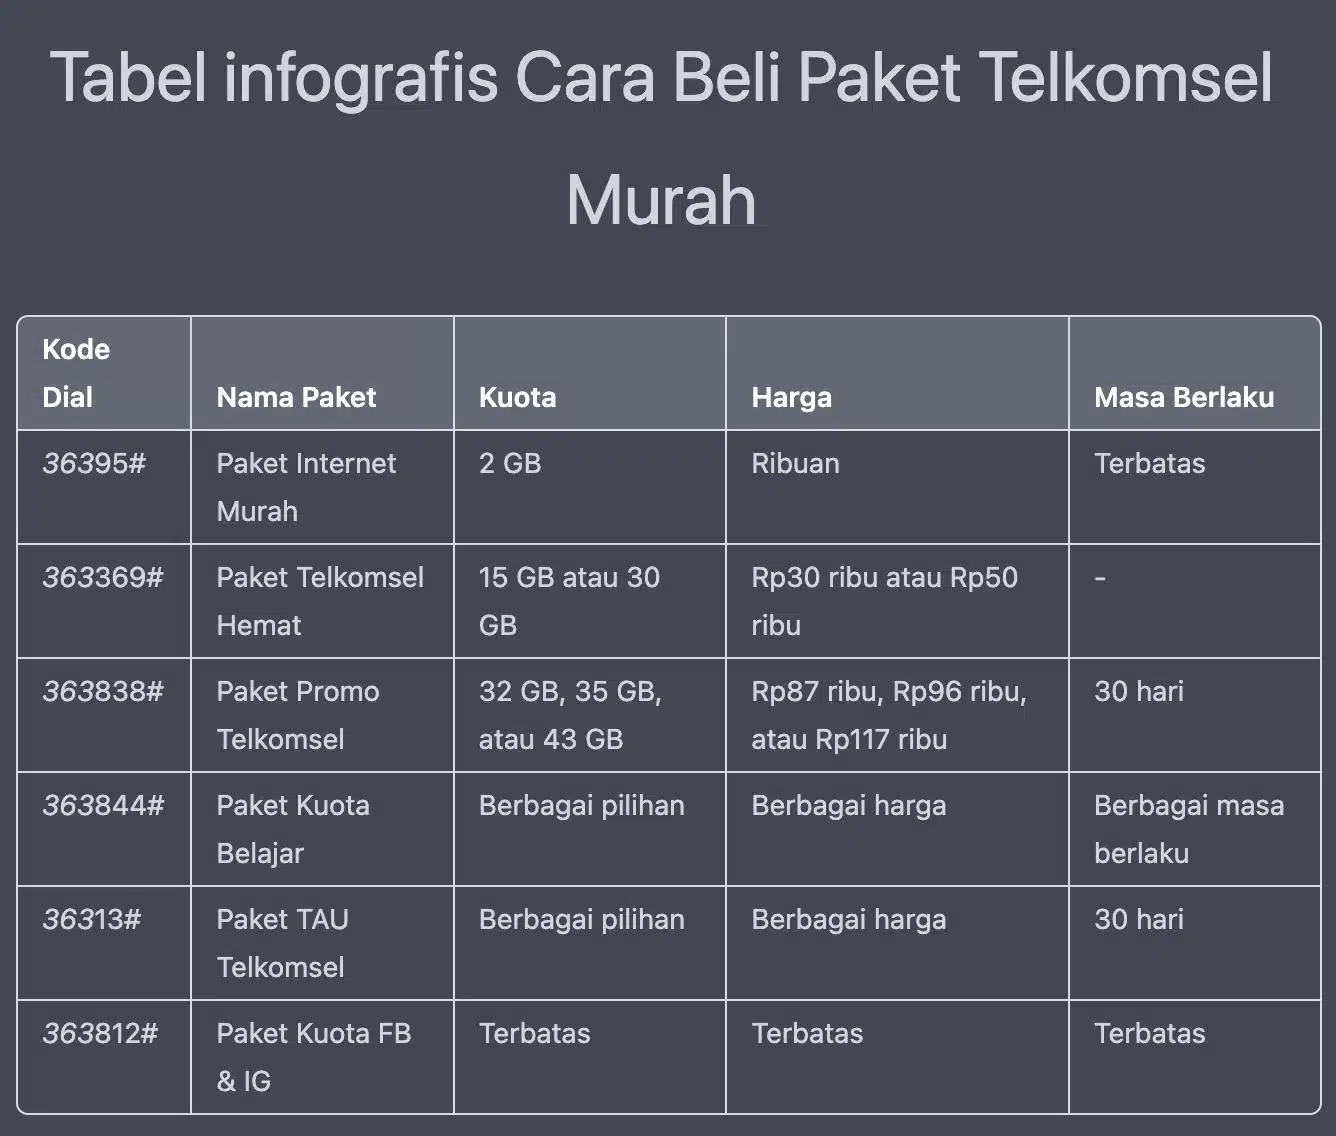 Tabel infografis Cara Beli Paket Telkomsel Murah 